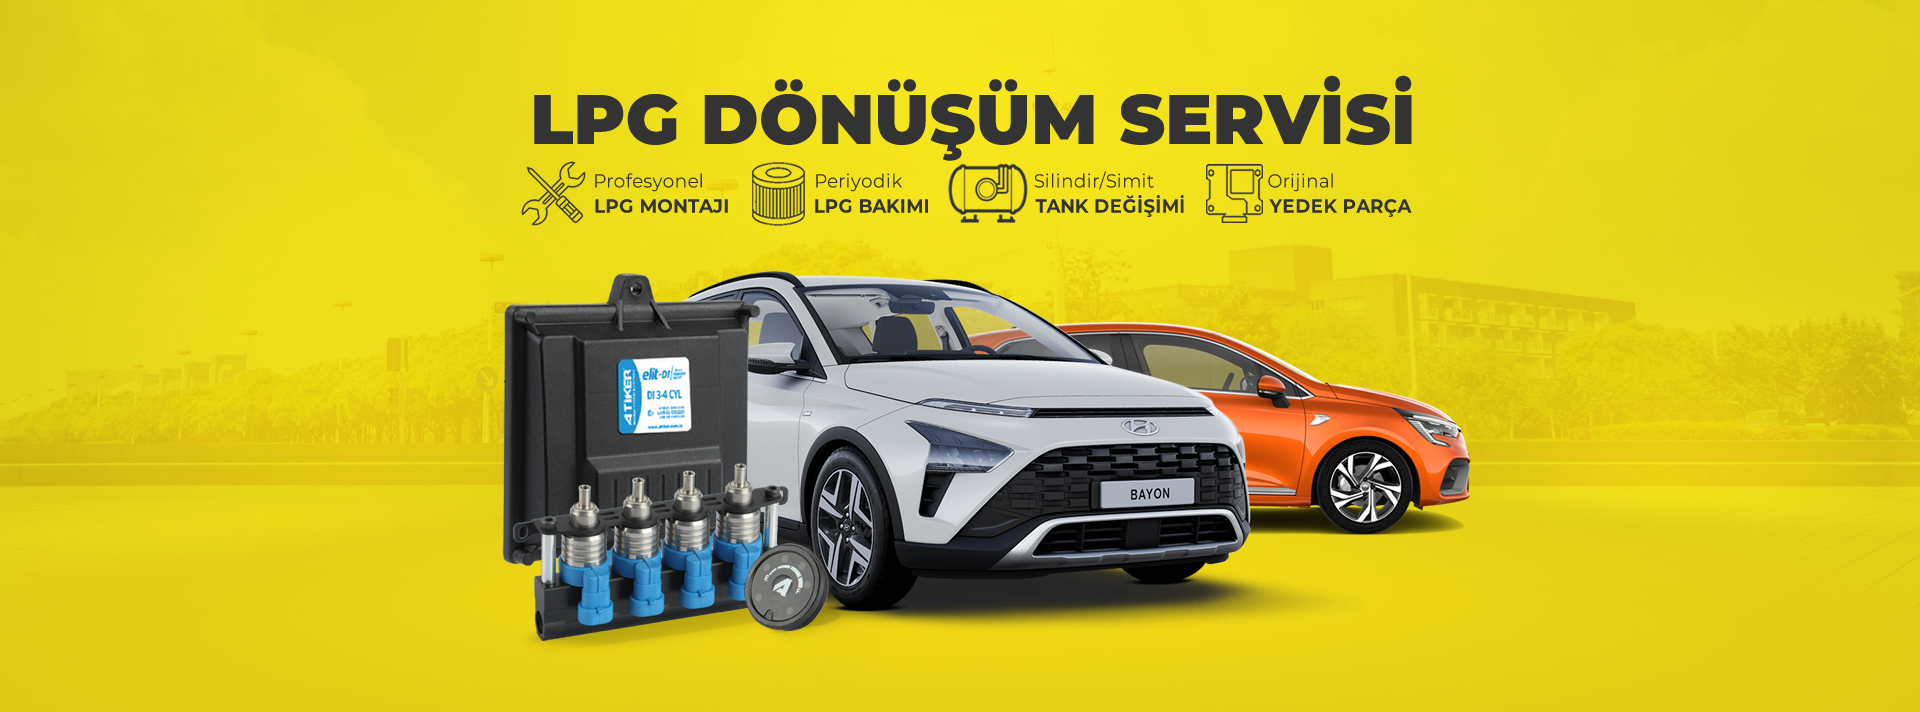 LPG Dönüşüm Servisi, Montaj Fiyatları - İSTANBUL